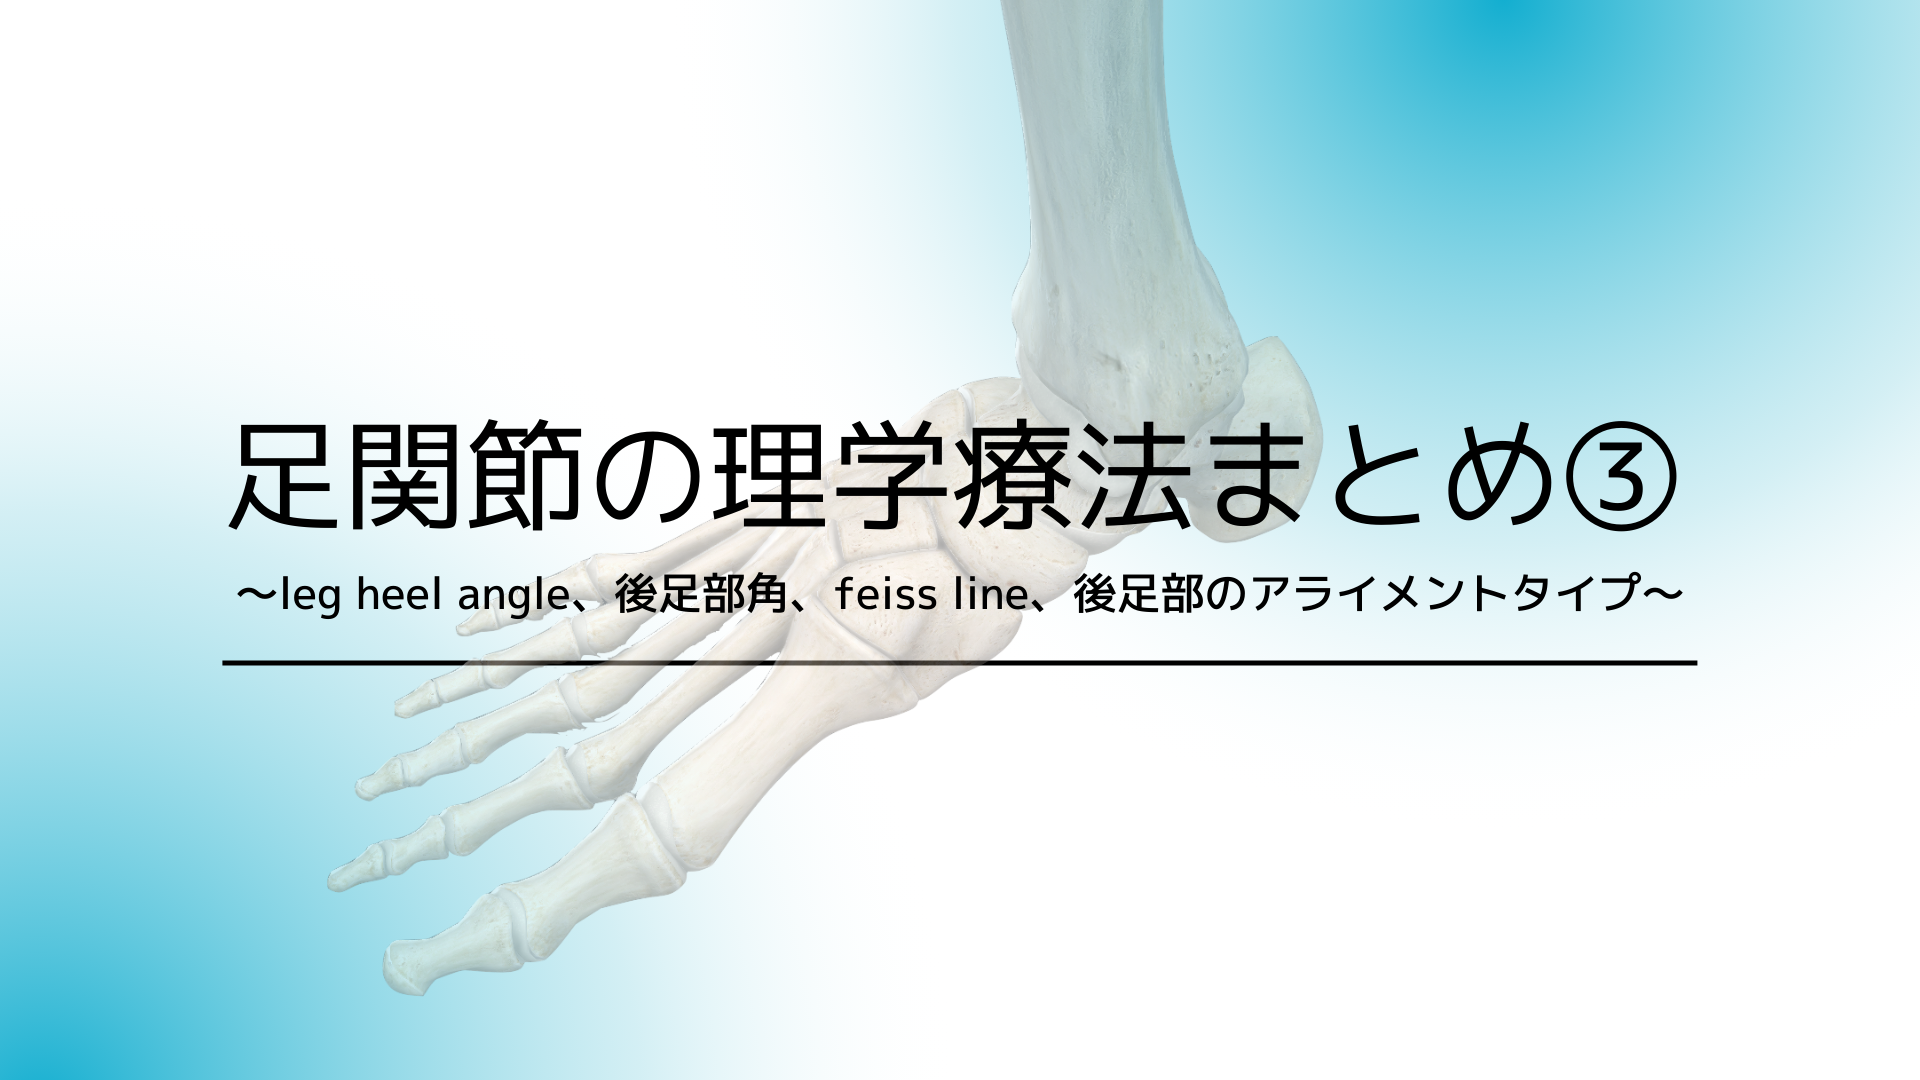 足関節の理学療法まとめ③〜leg heel angle、後足部角、feiss line、後足部のアライメントタイプ〜